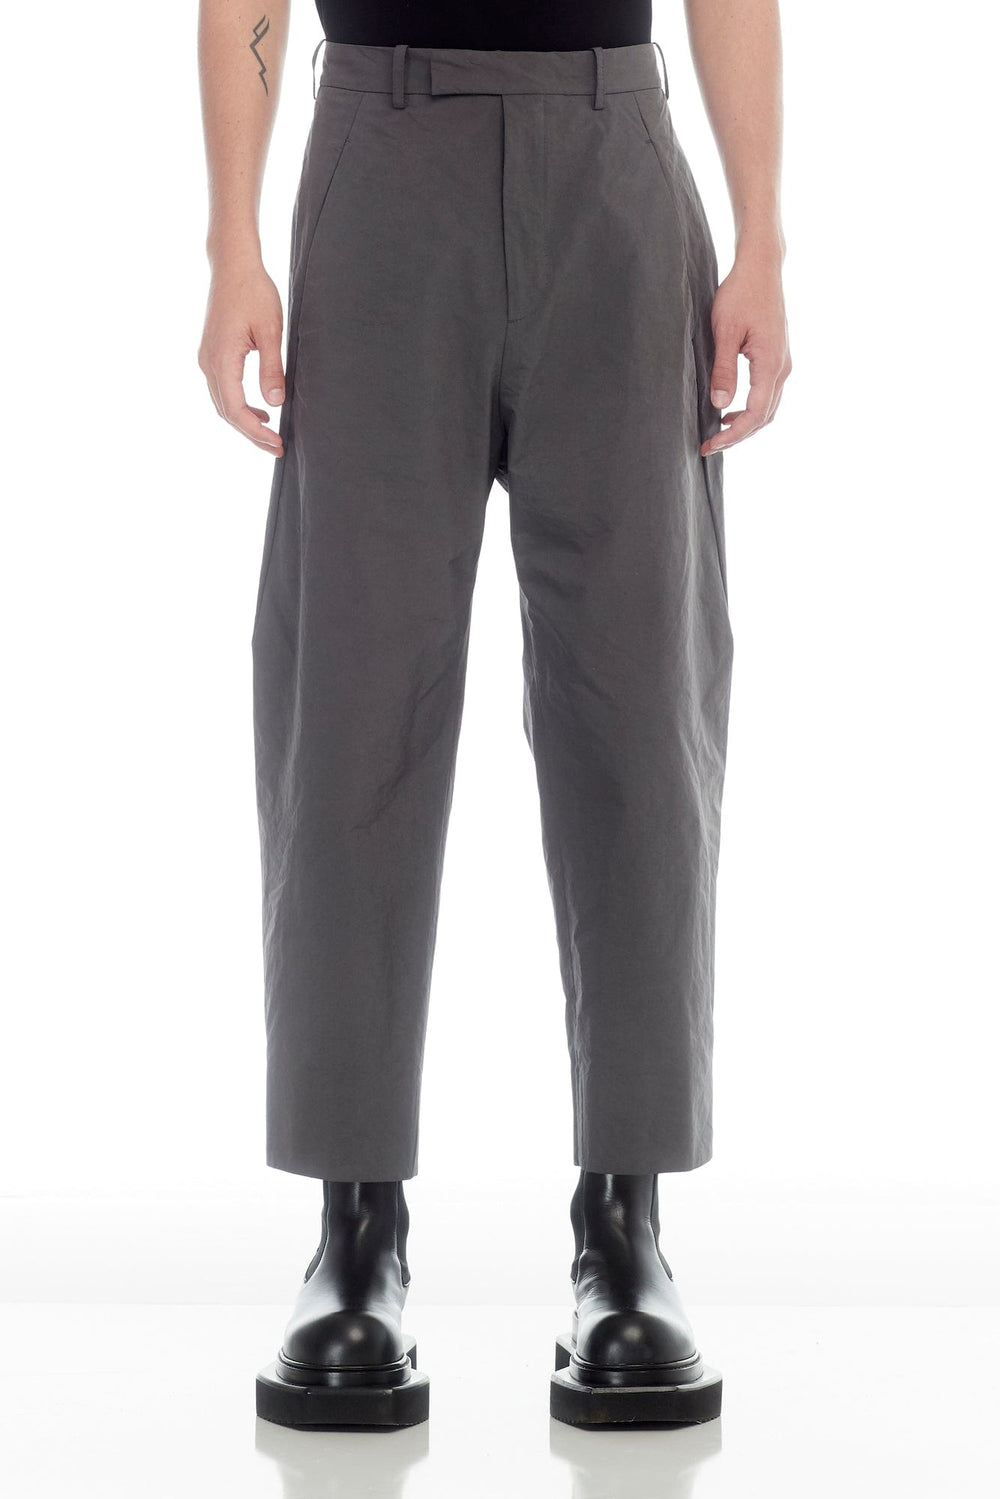 専門通販Craig Green - Uniform Trousers パンツ